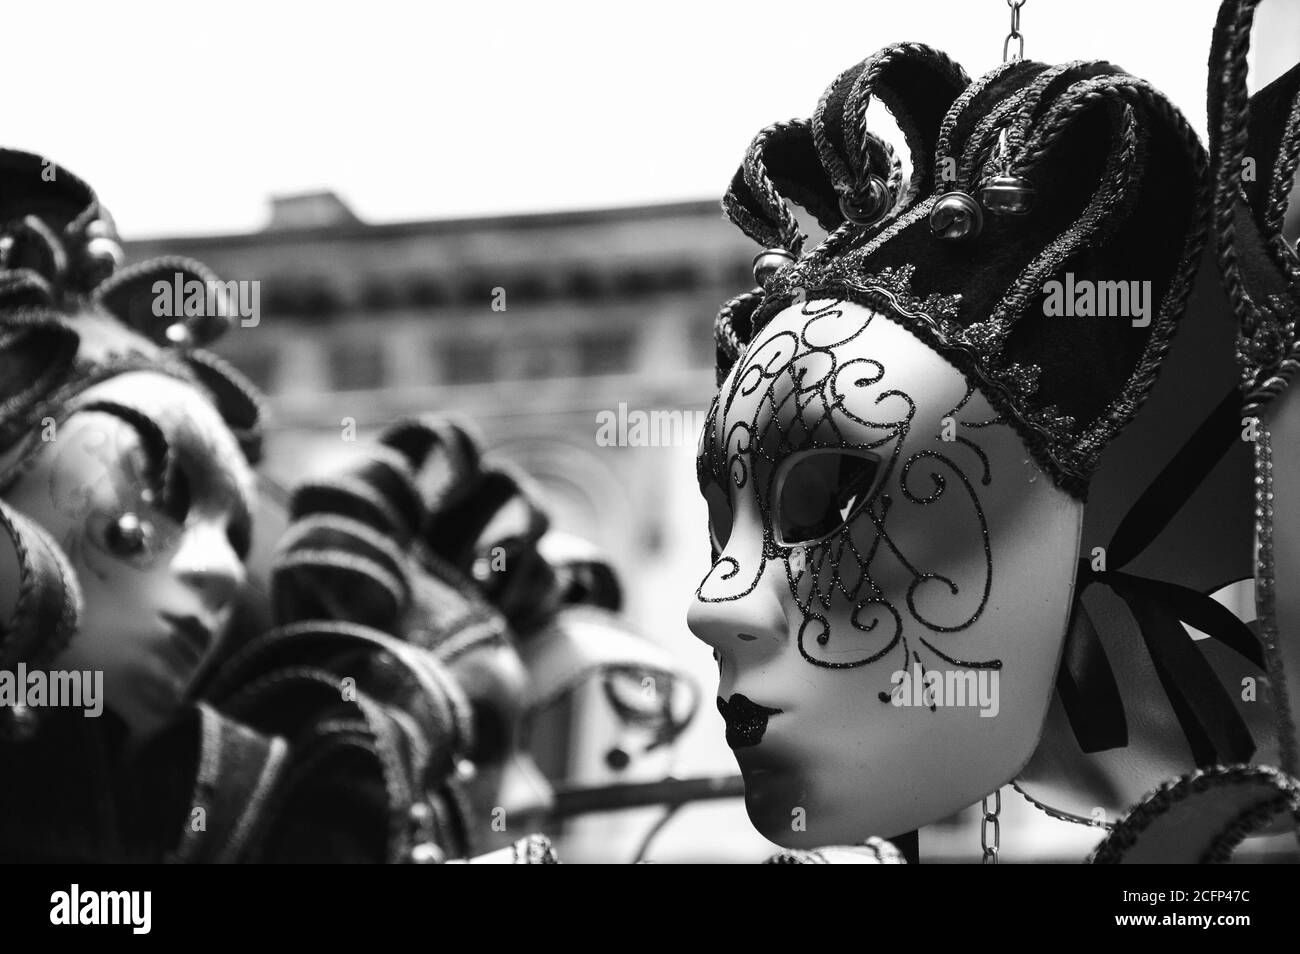 Masques vénitiens à vendre dans la rue. Venise (Italie). Noir et blanc. Banque D'Images